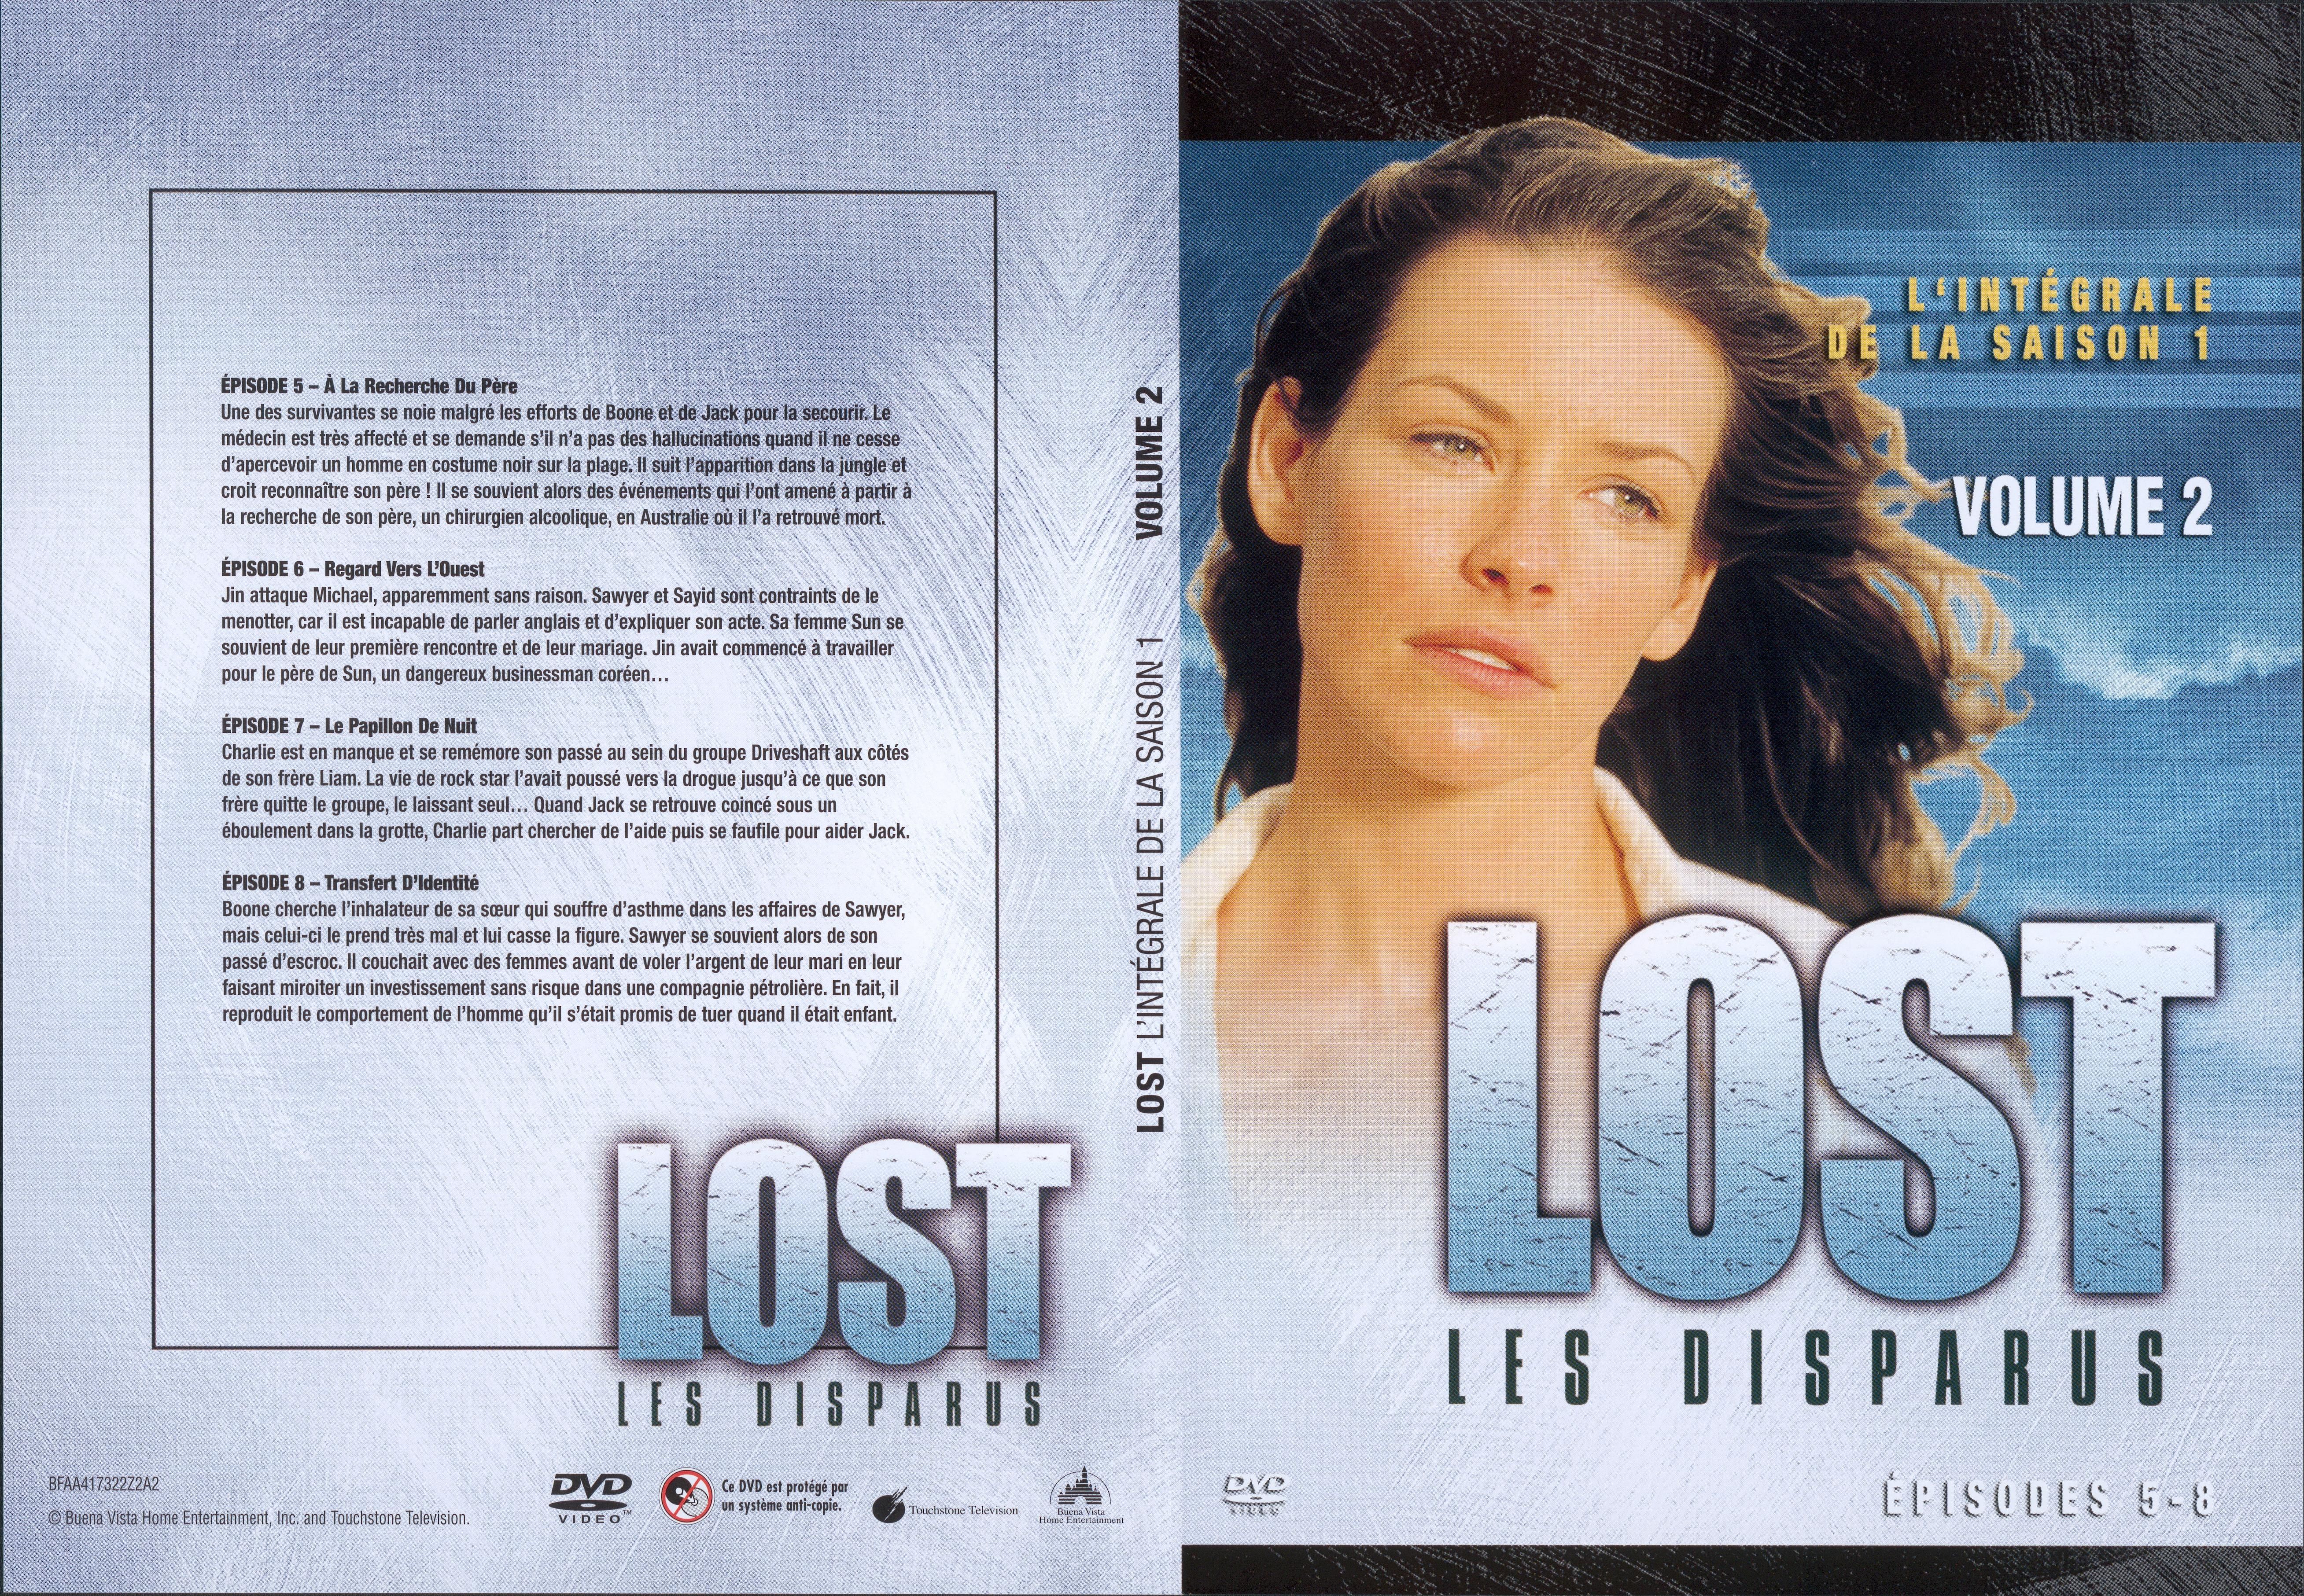 Jaquette DVD Lost Saison 1 DVD 2